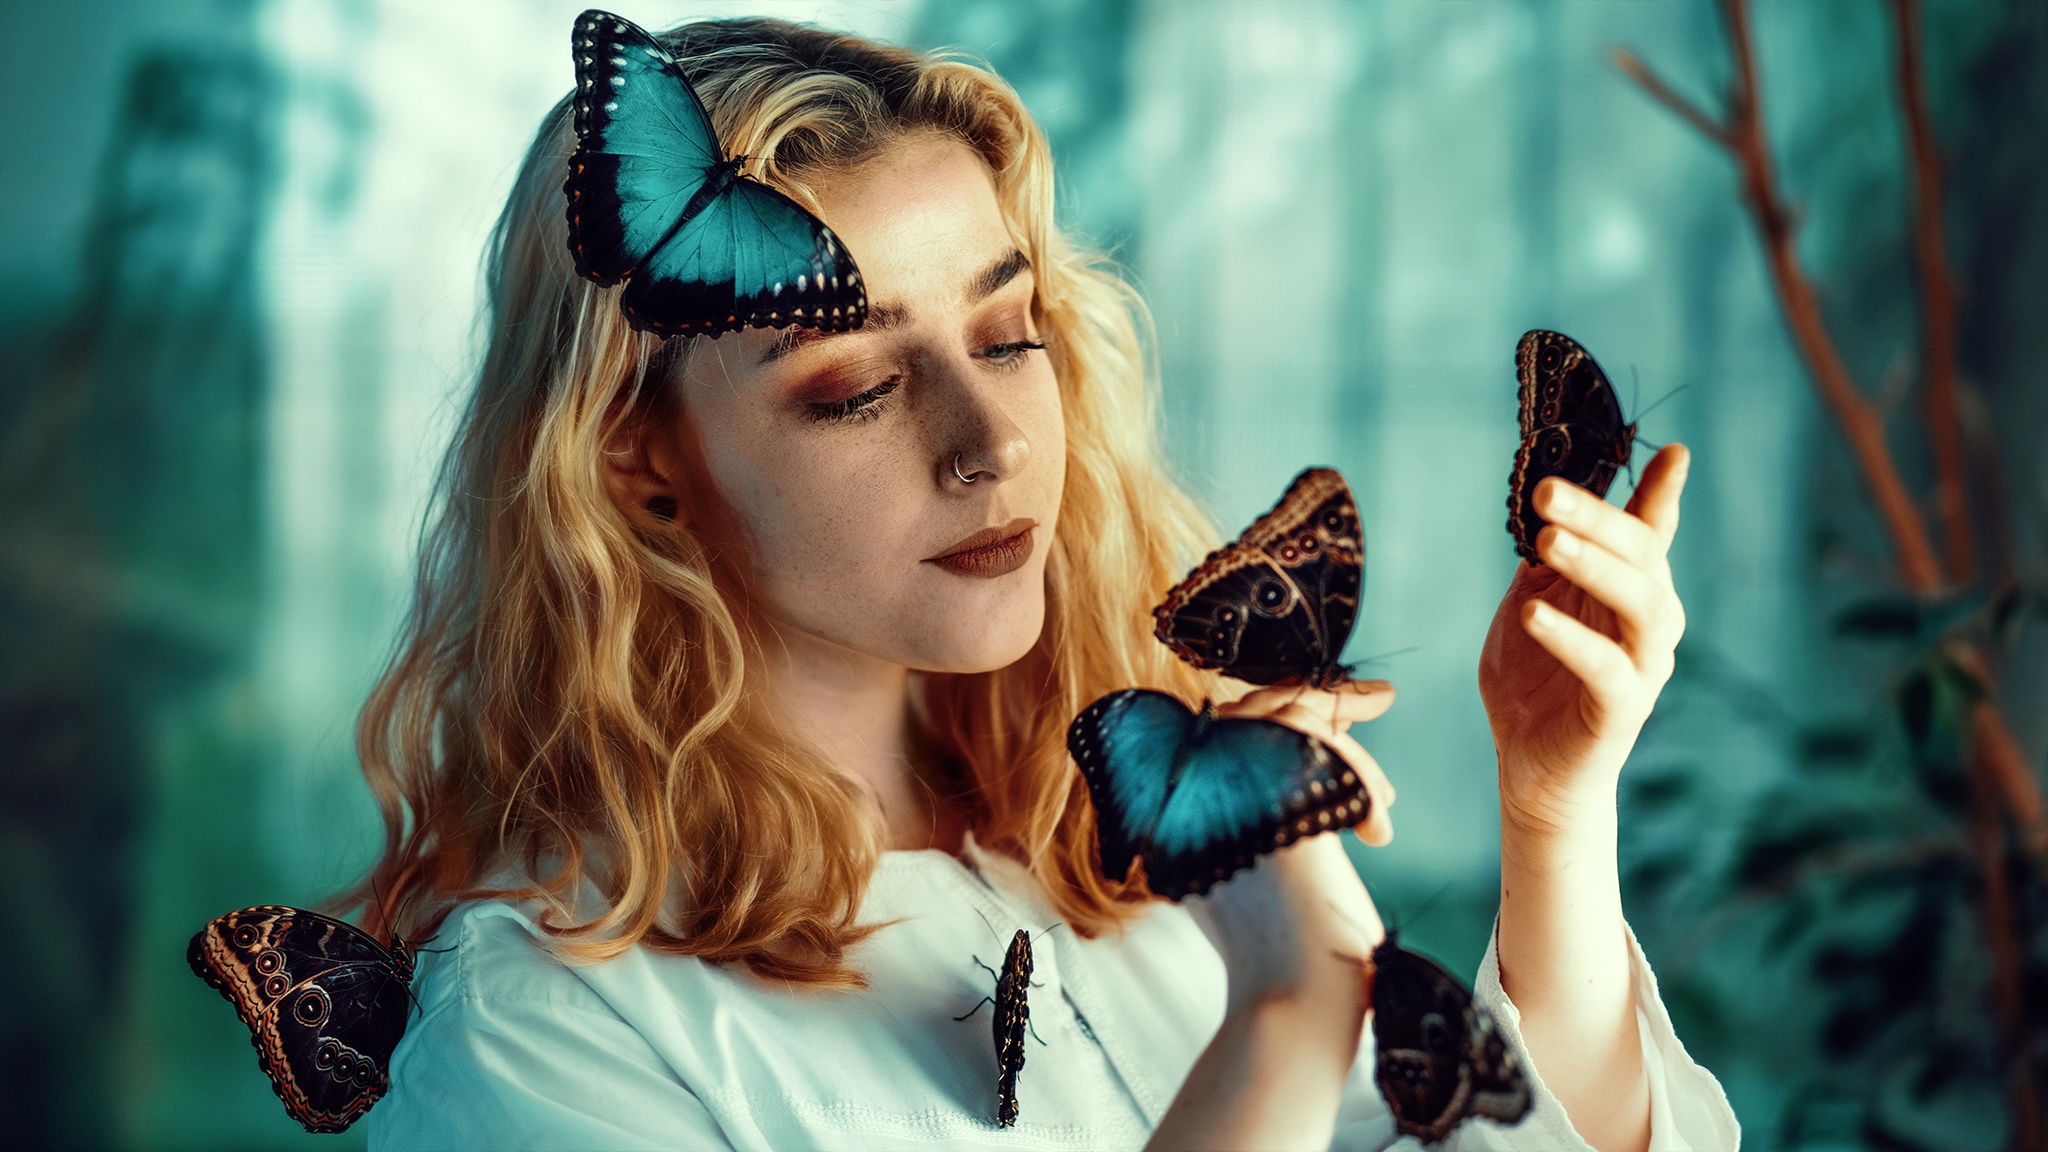 Free download wallpaper Butterfly, Mood, Blonde, Model, Women, Depth Of Field on your PC desktop